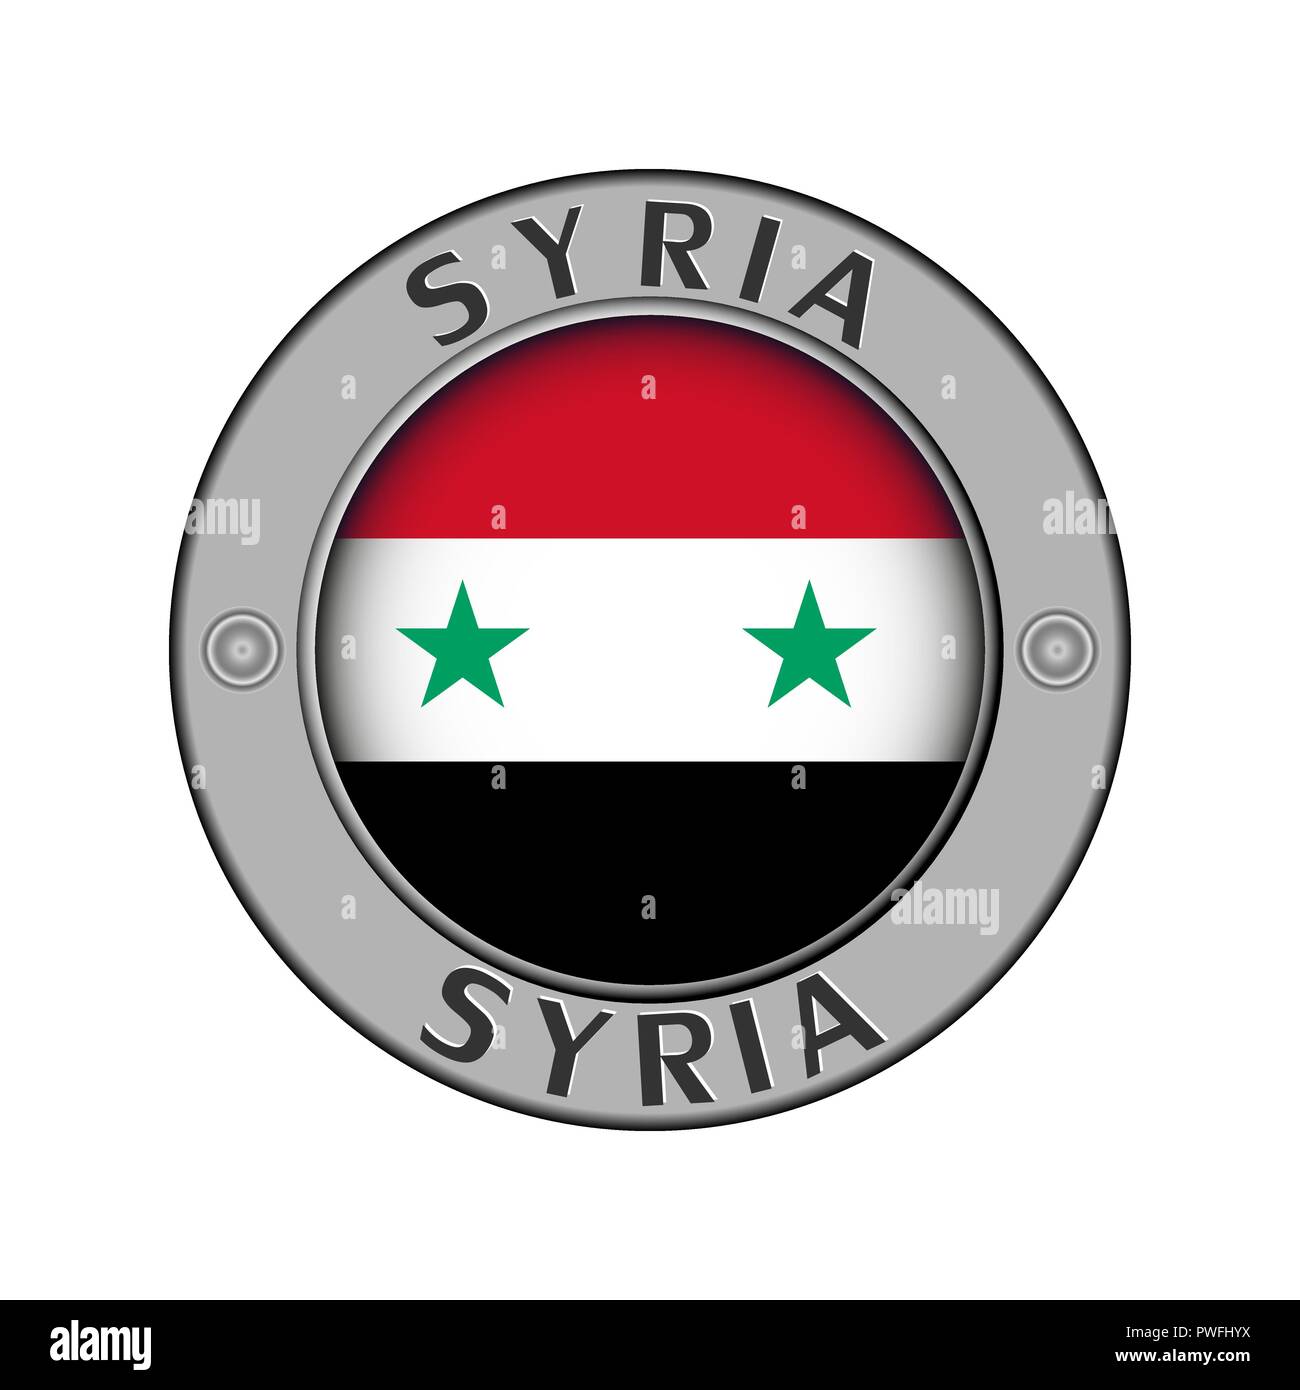 Rotondo di metallo medaglione con il nome del paese di Siria e un indicatore rotondo nel centro Illustrazione Vettoriale